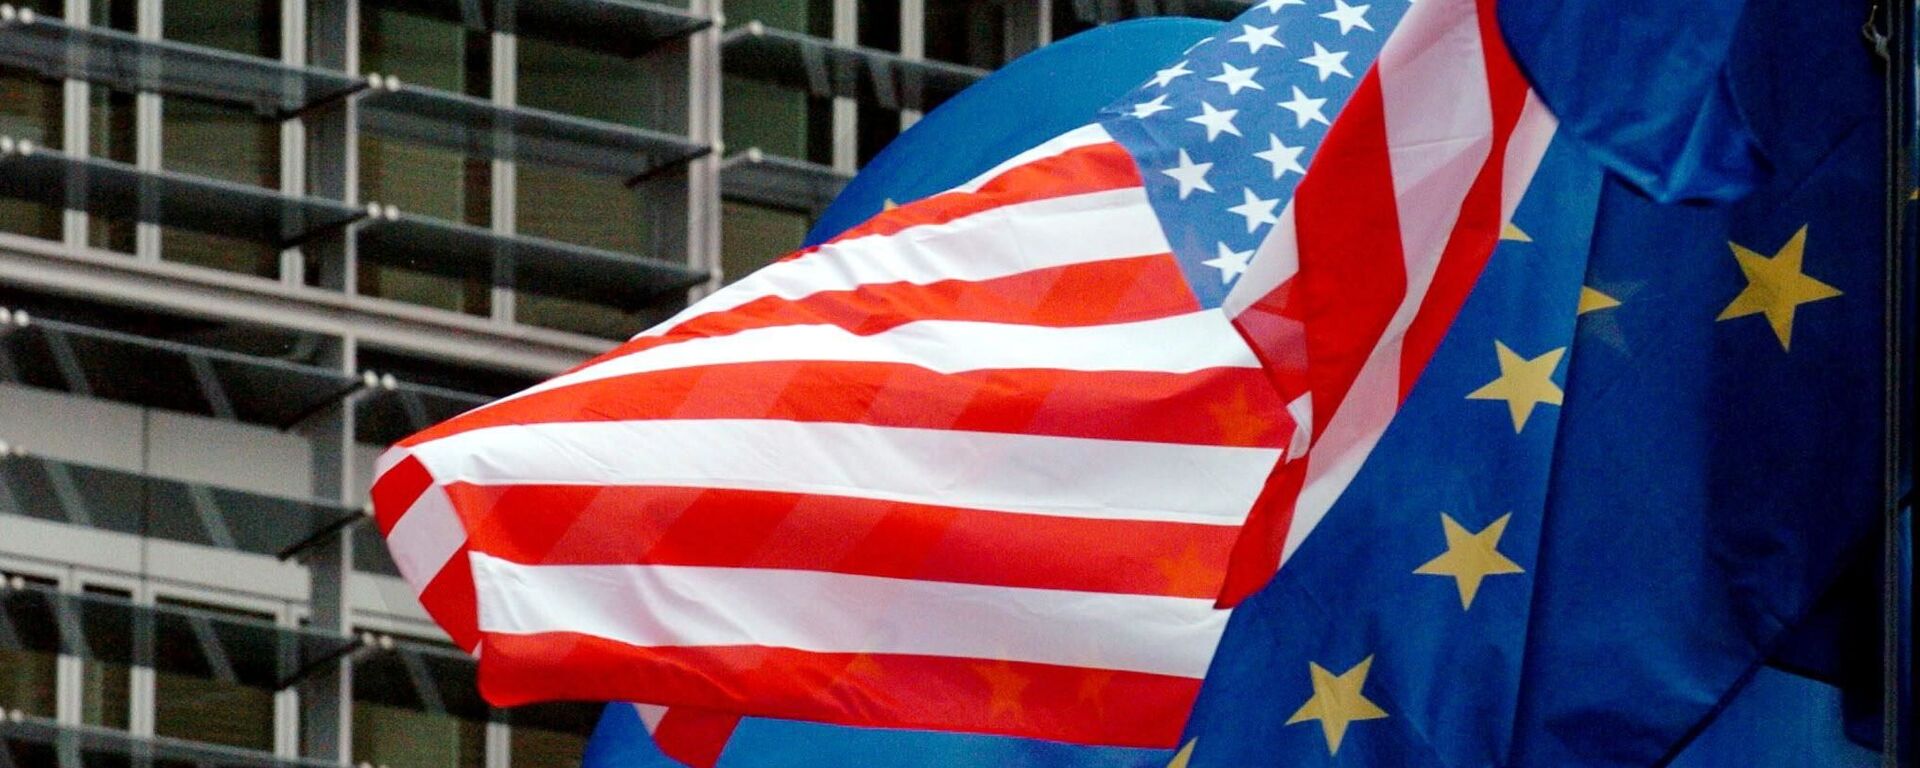 Флаги США и Евросоюза перед зданием Еврокомиссии в Брюсселе - Sputnik Lietuva, 1920, 13.07.2020